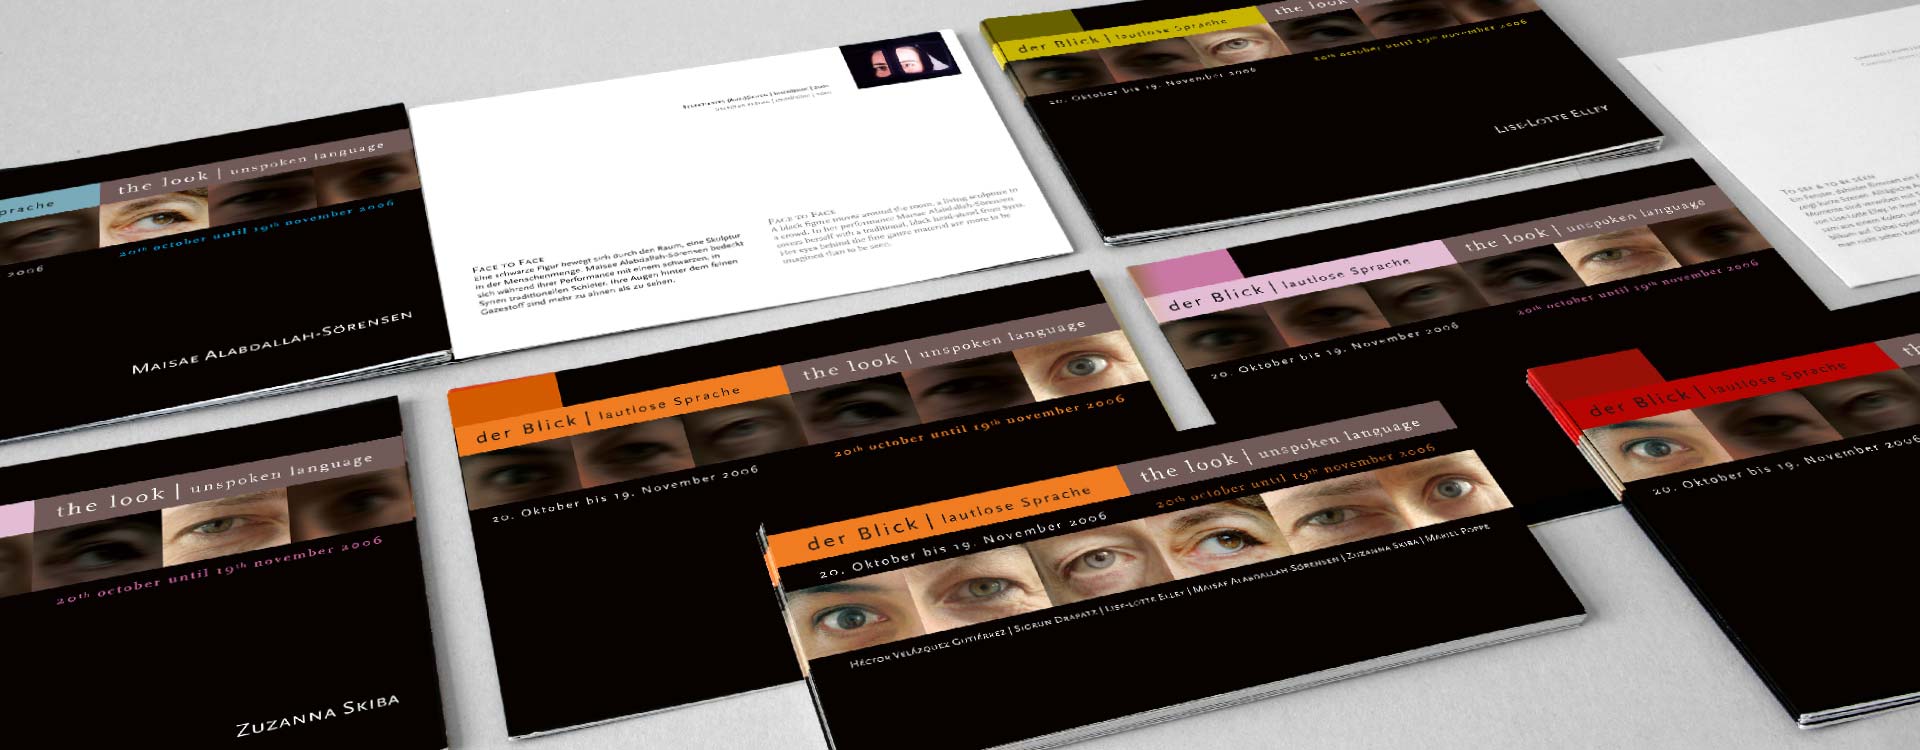 Faltblätter zur Ausstellung „Der Blick“ der Galerie Arttransponder; Design: Kattrin Richter | Büro für Grafikdesign